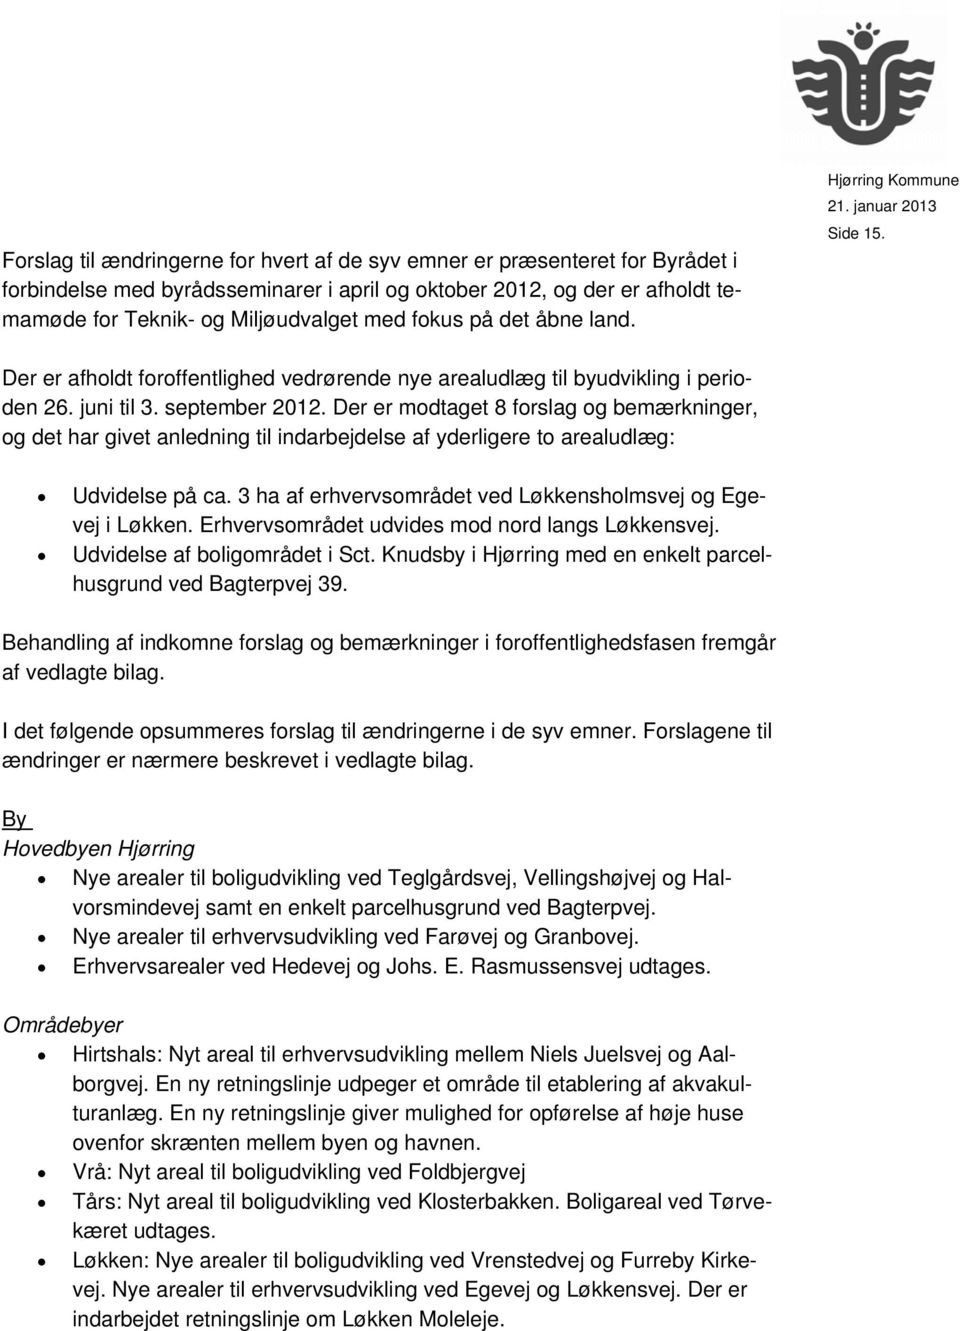 Der er modtaget 8 forslag og bemærkninger, og det har givet anledning til indarbejdelse af yderligere to arealudlæg: Udvidelse på ca. 3 ha af erhvervsområdet ved Løkkensholmsvej og Egevej i Løkken.